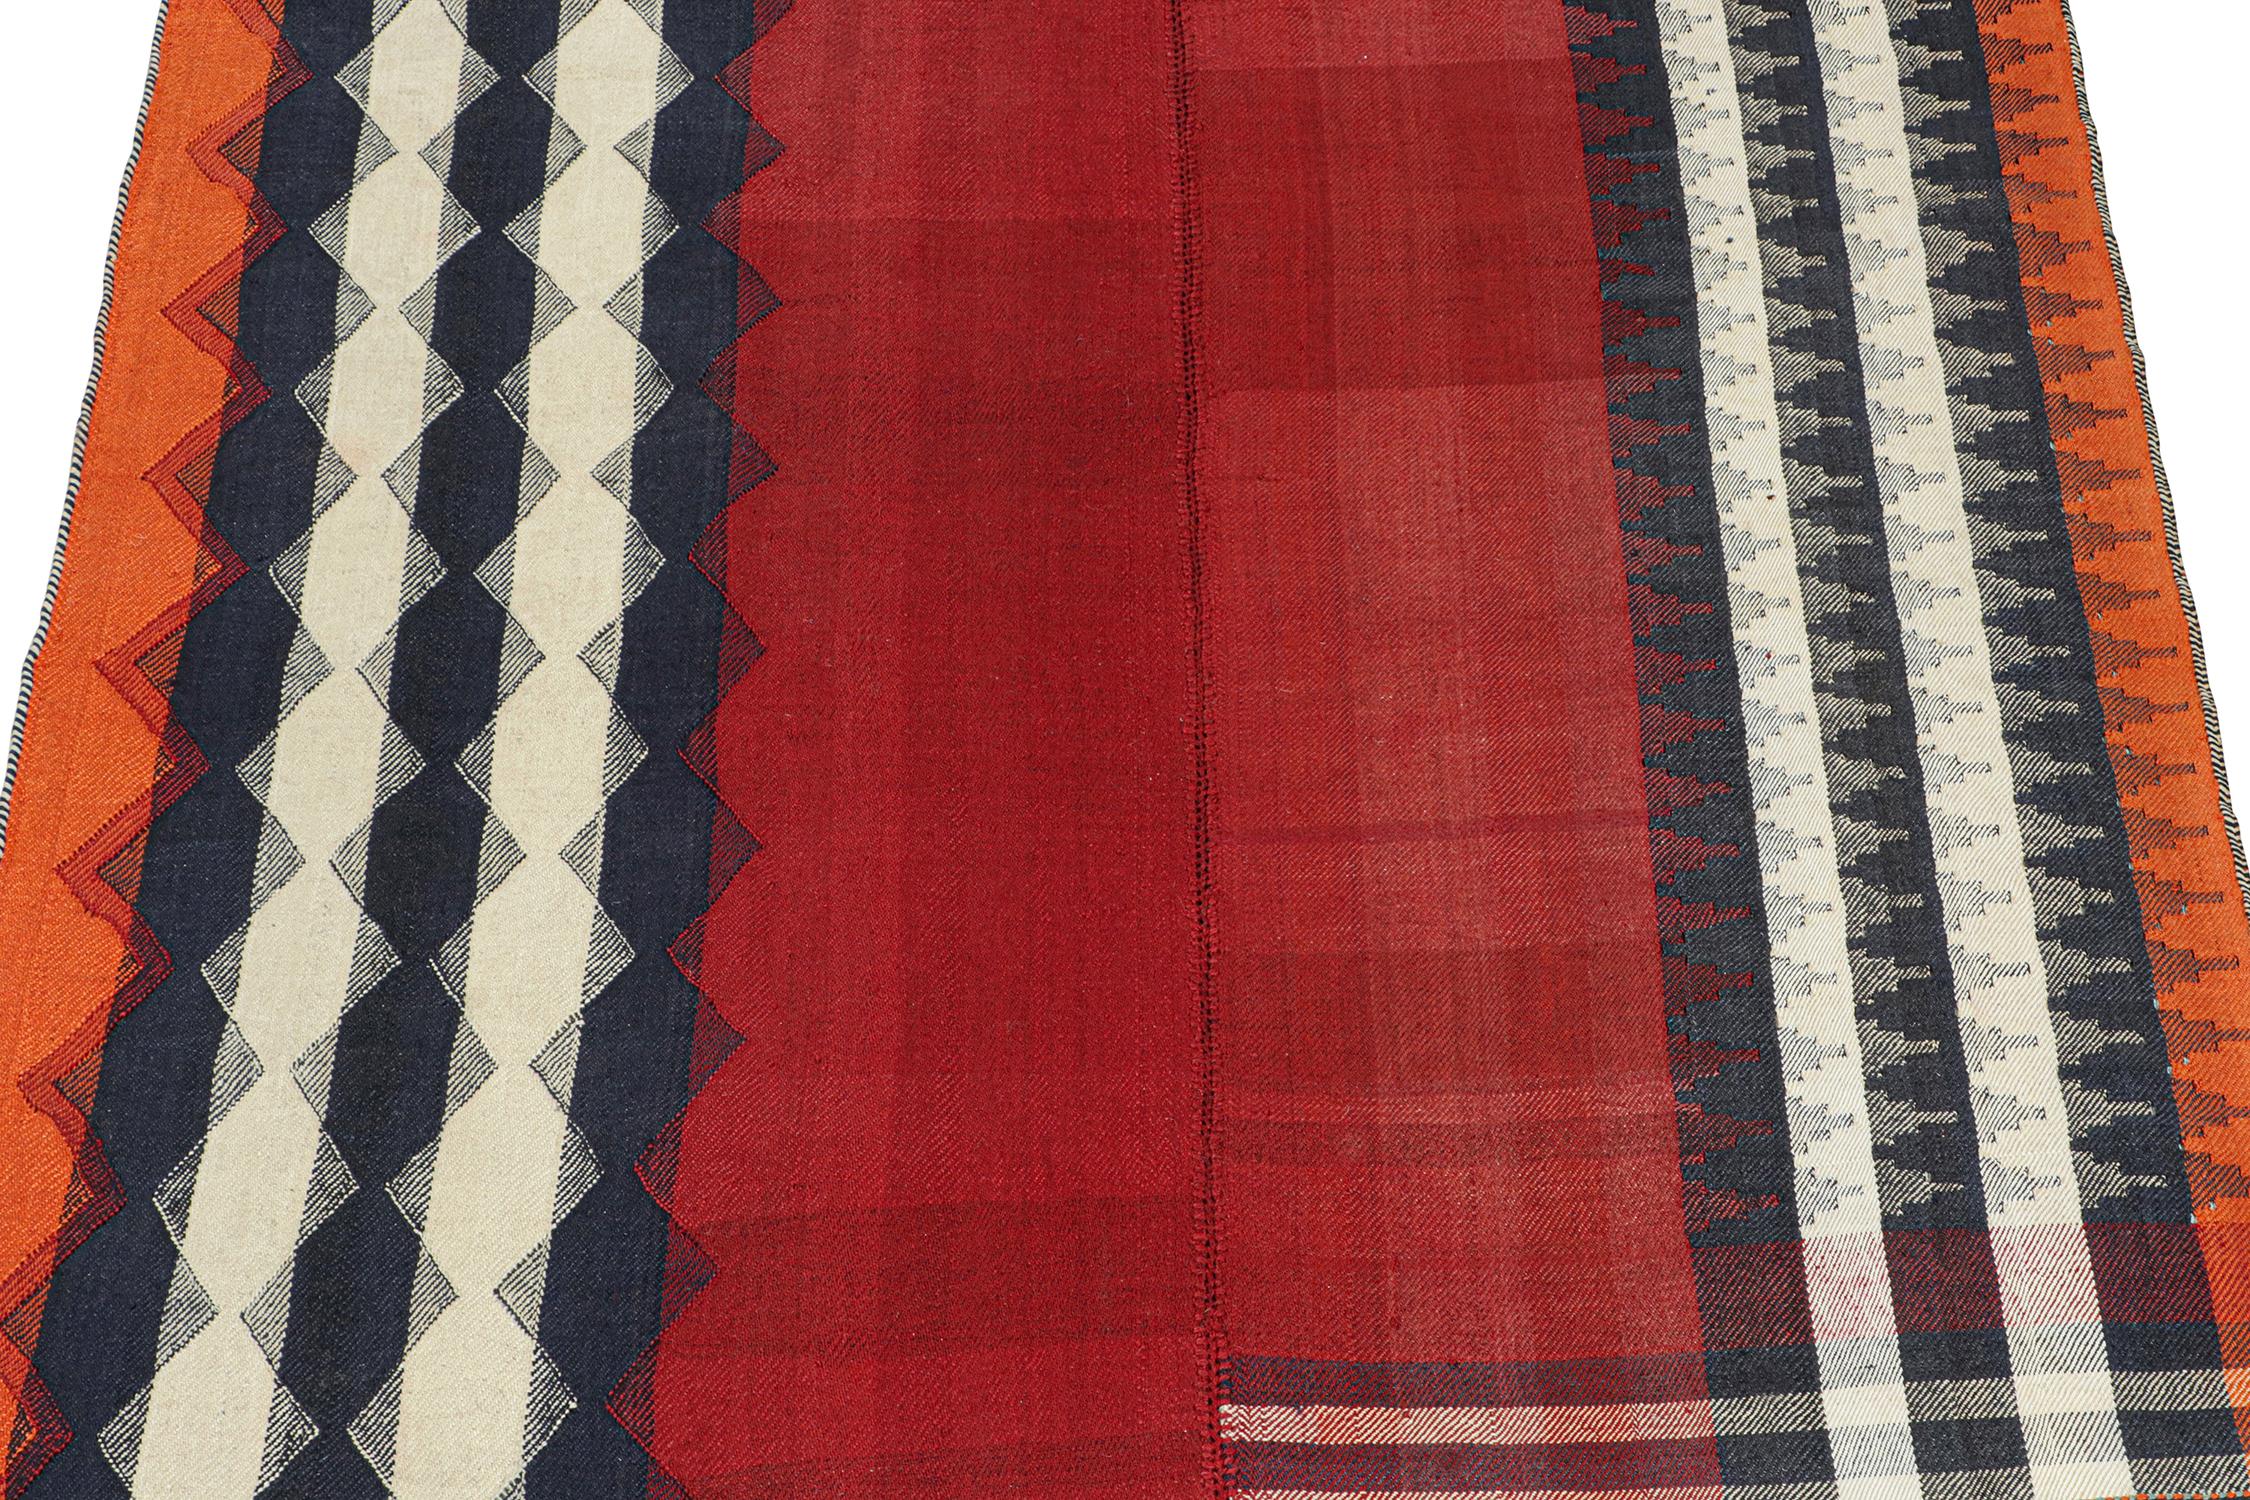 Ce tapis kilim persan vintage de 5x5 est tissé à la main en laine et date d'environ 1950-1960.

Il s'agit d'un tissage en panneaux, dans lequel les tissages tribaux combinent deux ou plusieurs tissages plats en une pièce plus grande. Cette pièce